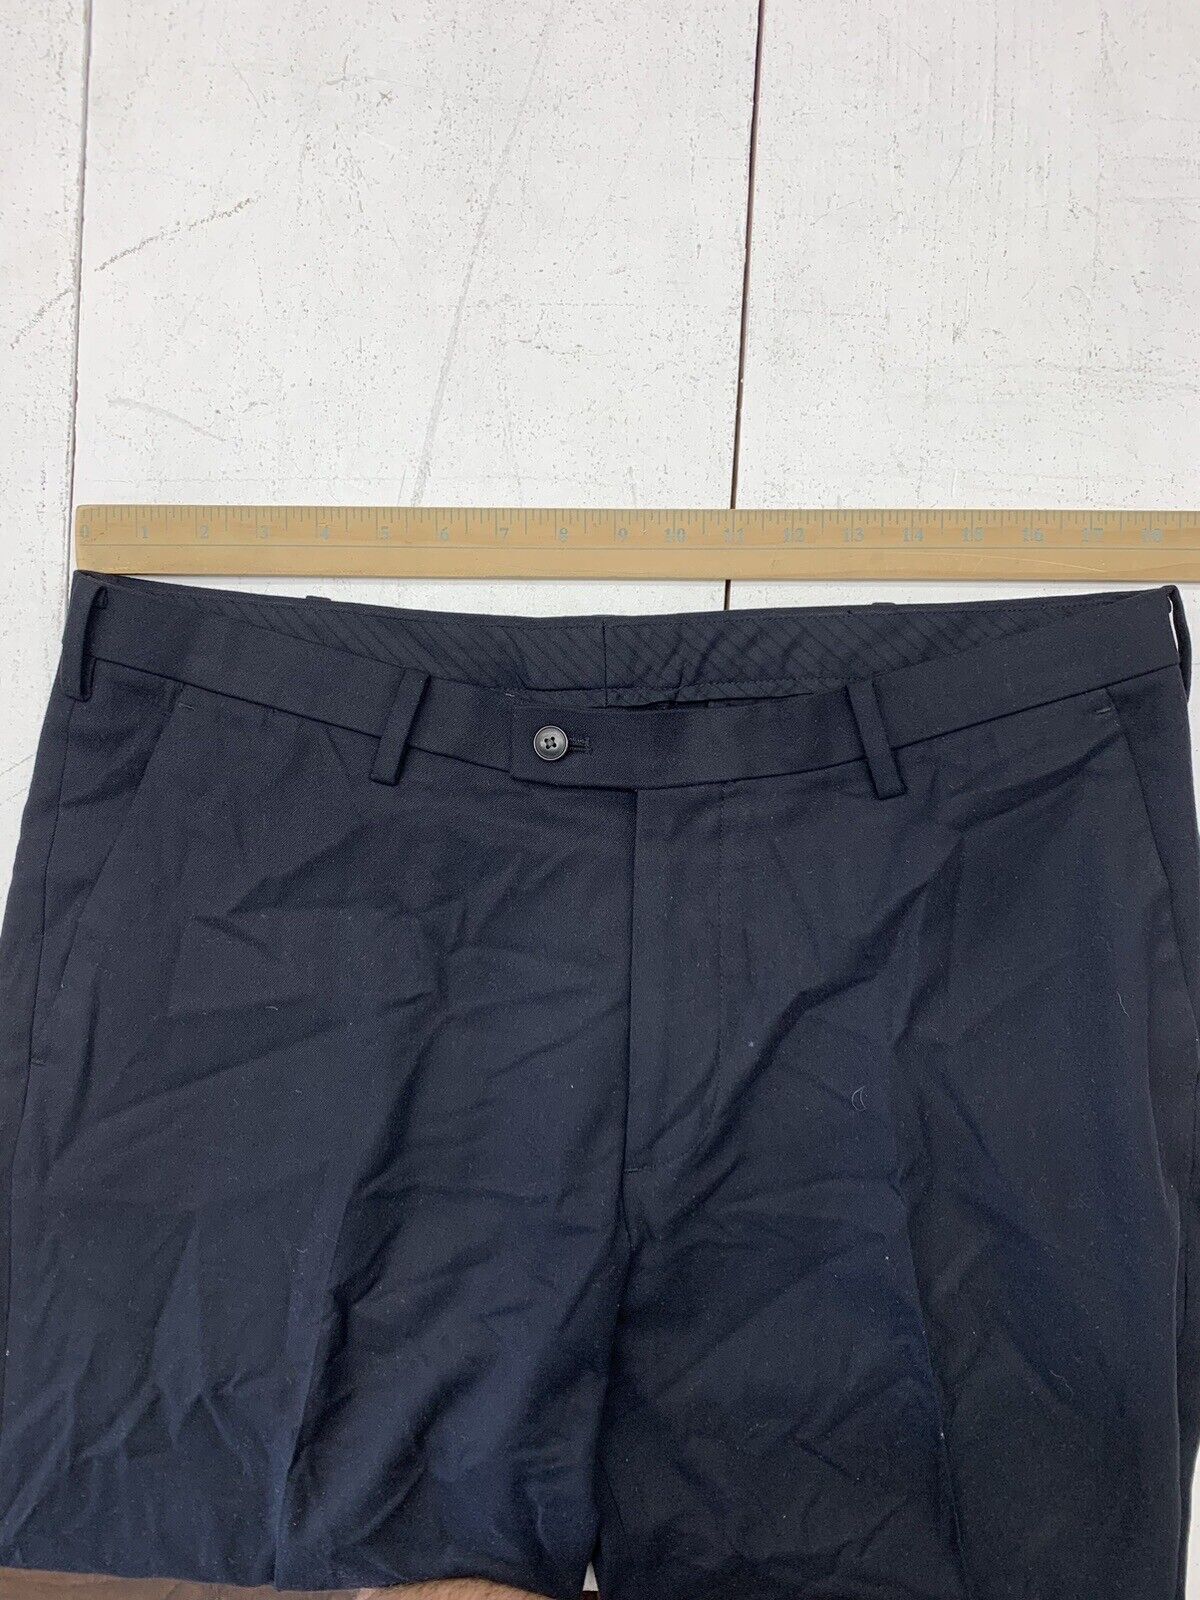 Uniqlo Mens Black Heattech Dress Pants Size 36/34 - beyond exchange